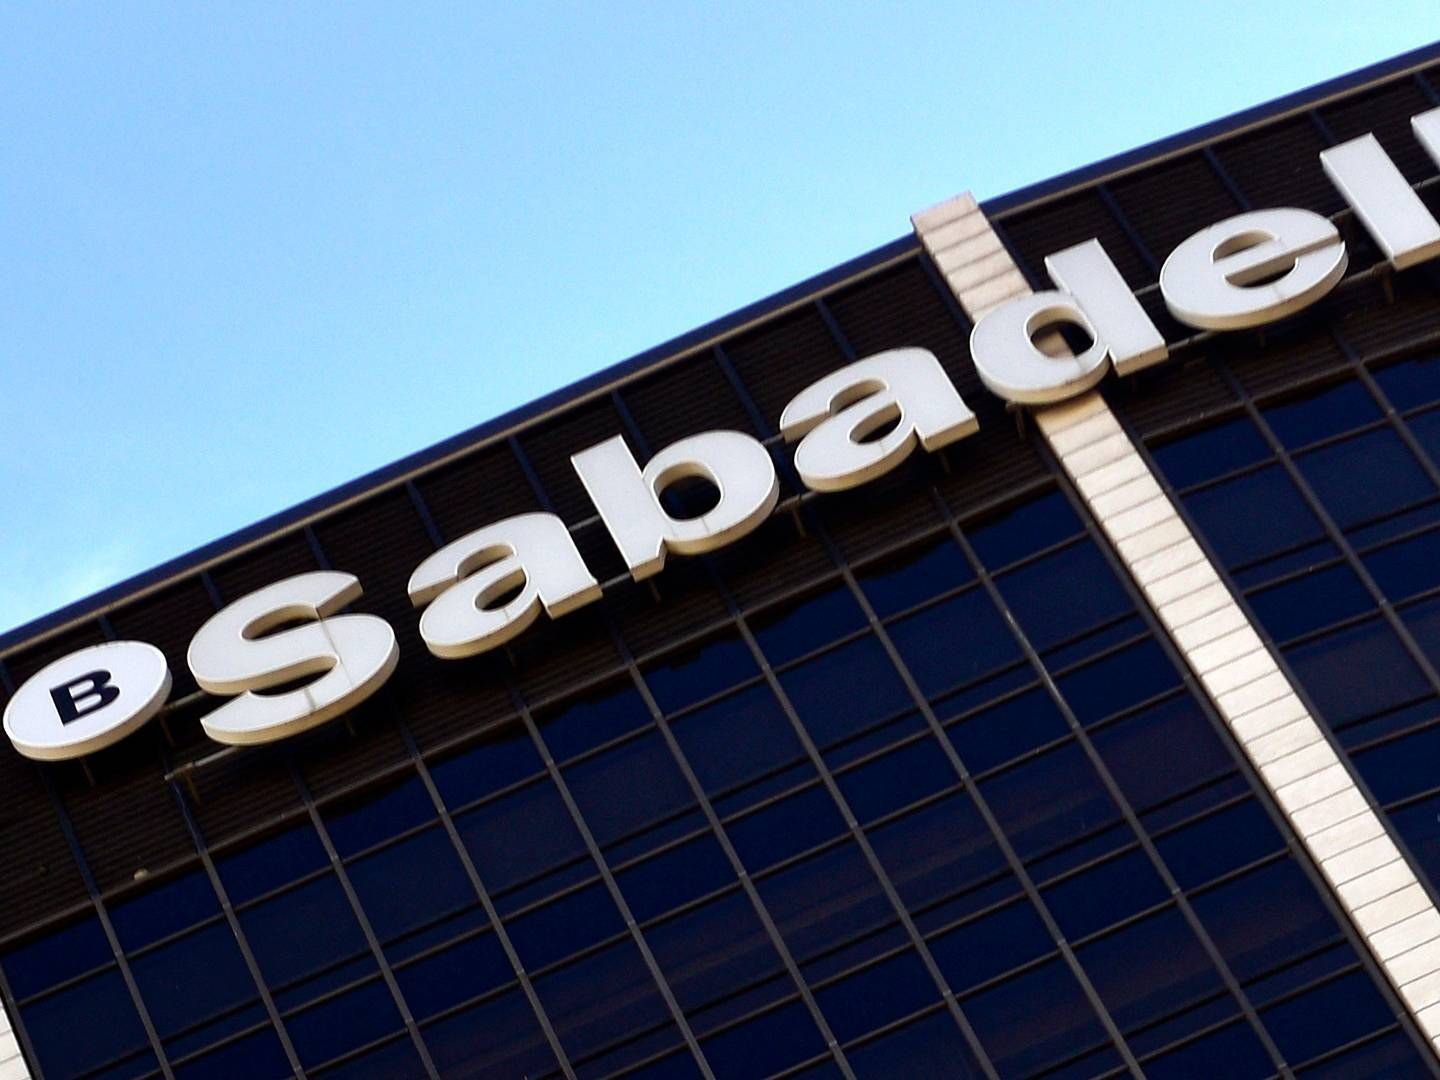 Banco Sabadell kan blive opkøbt, men direktør advarer mod konsekvenser, hvis myndigheder griber ind i handlen. | Photo: Pierre-philippe Marcou